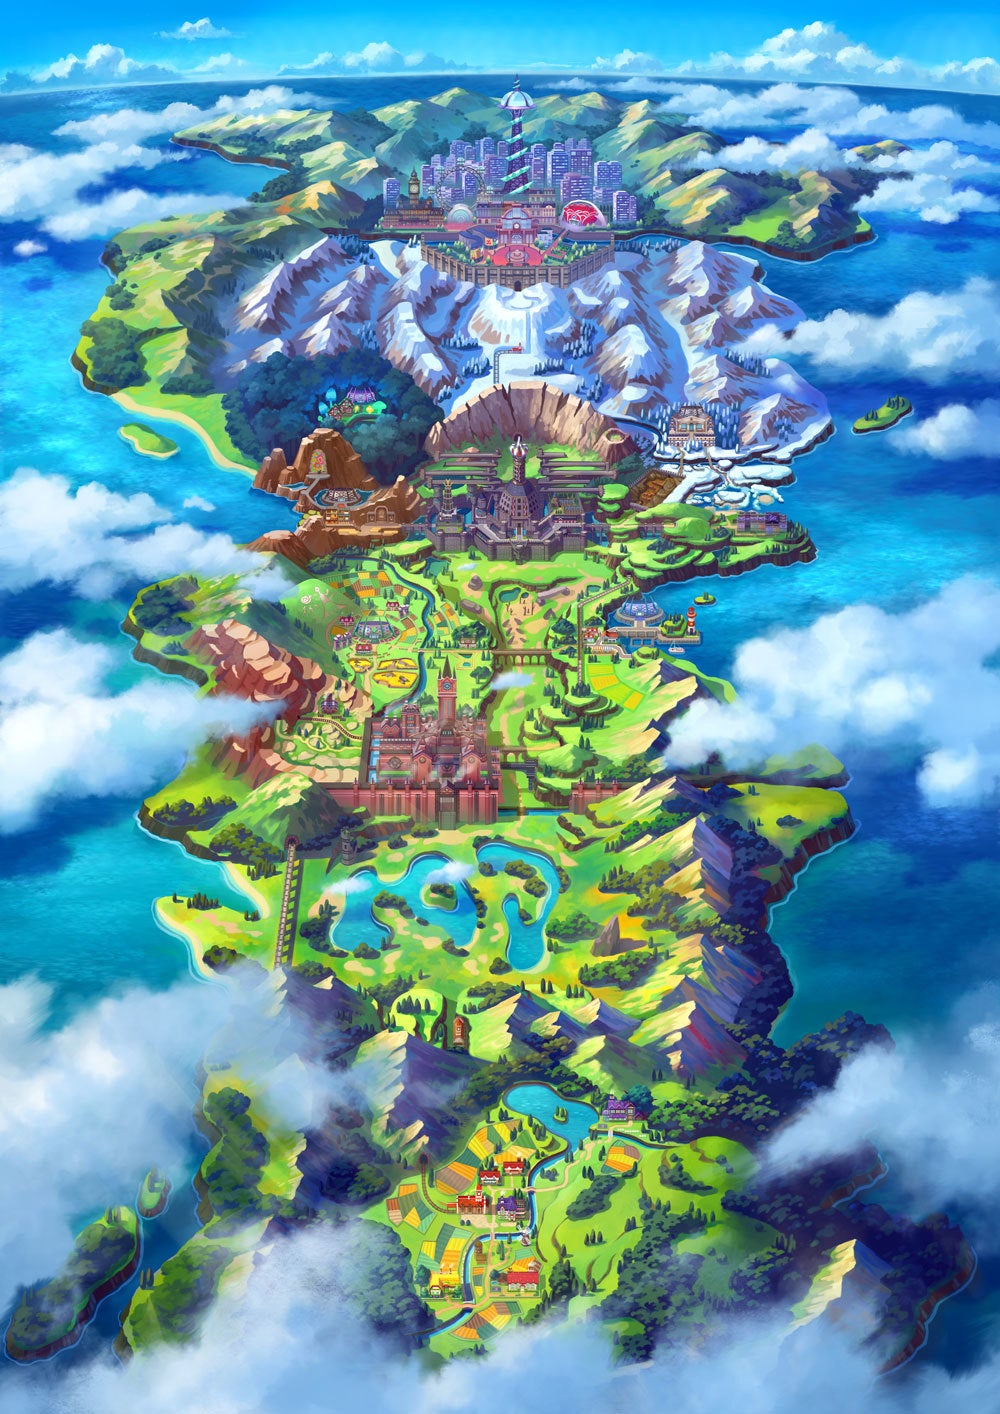 Pokémon GO BR on X: Das colinas gramadas da região de Kanto às florestas  da região de Sinnoh, qual desses Pokémon do tipo Planta é o seu favorito e  por quê? 🍃